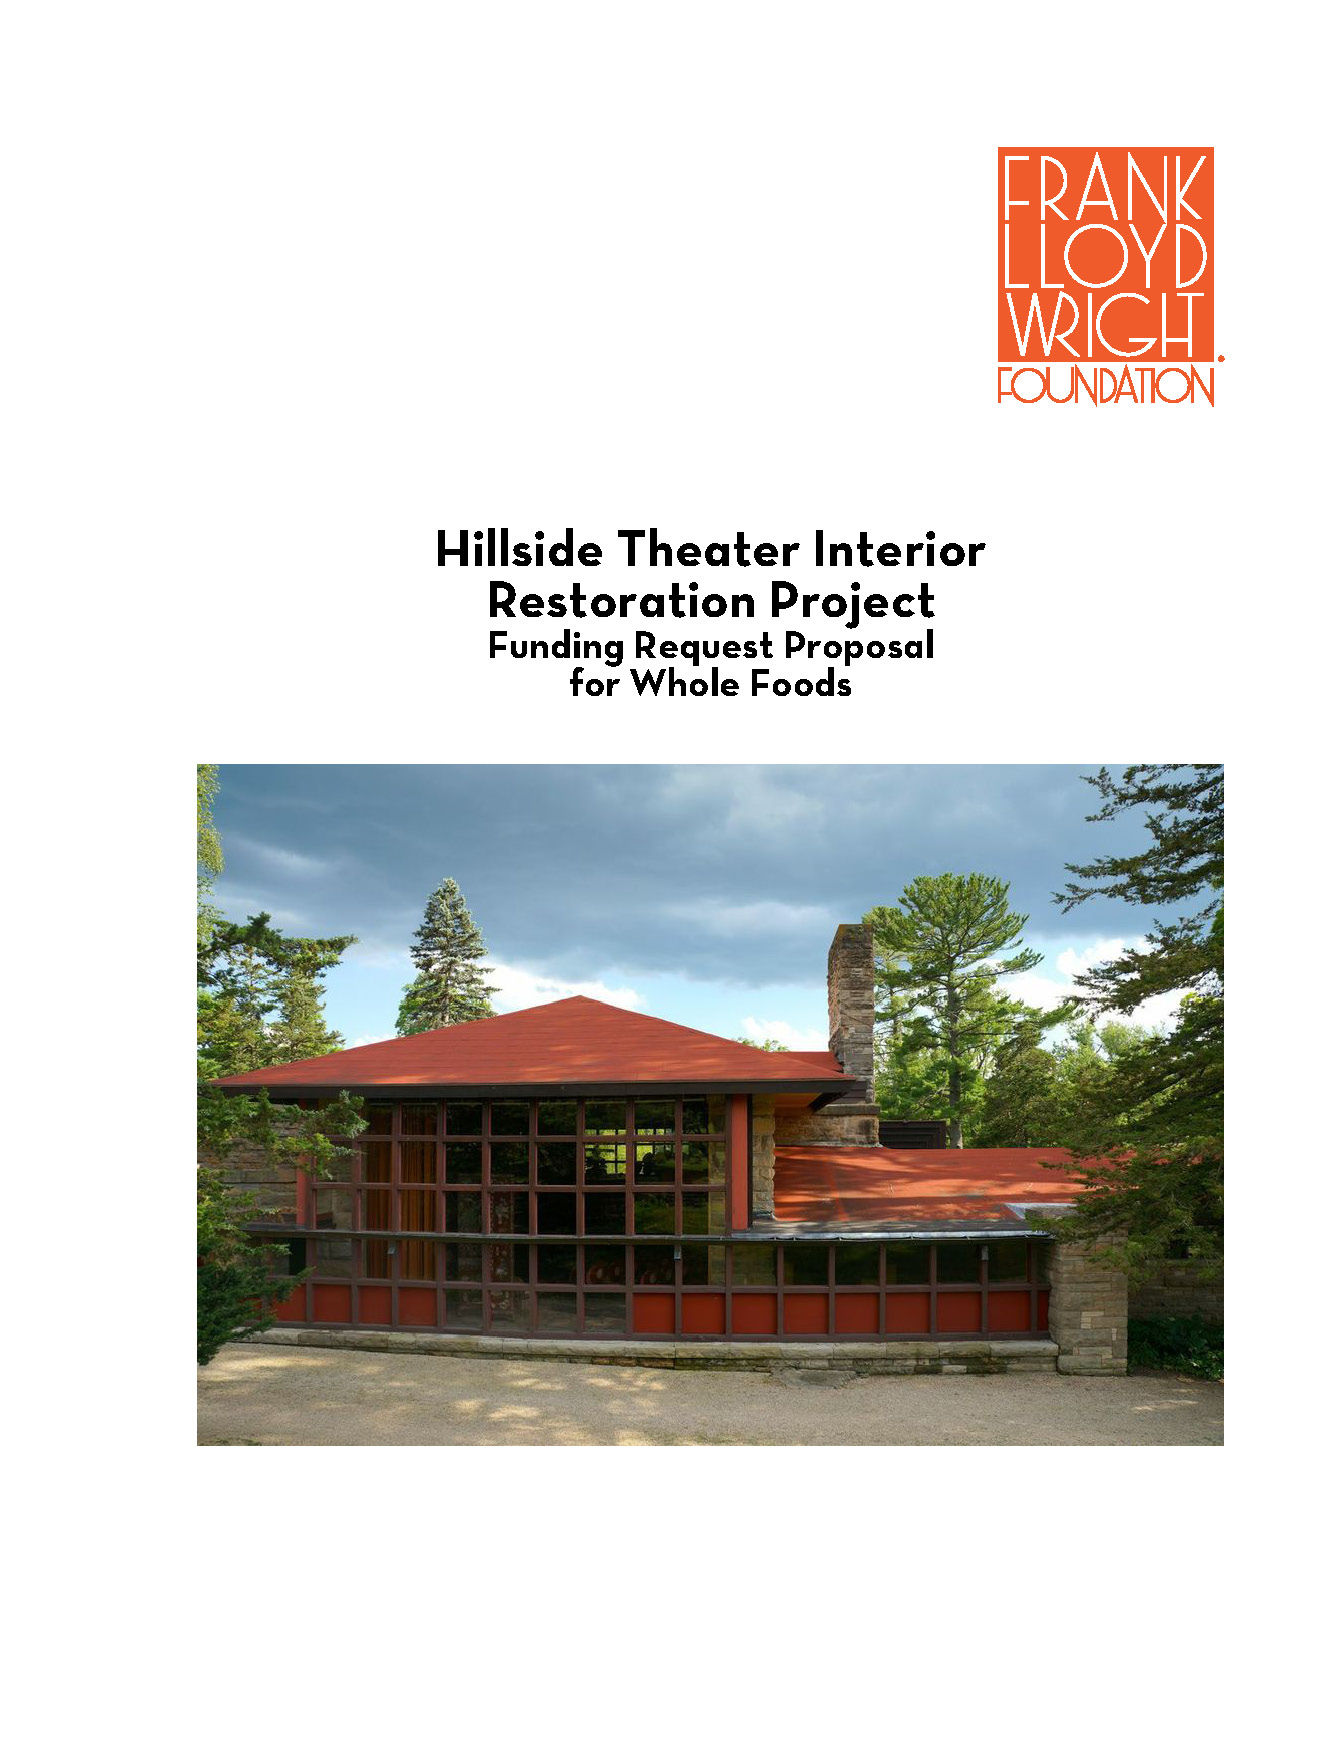 Hillside Theater Interior Restoration